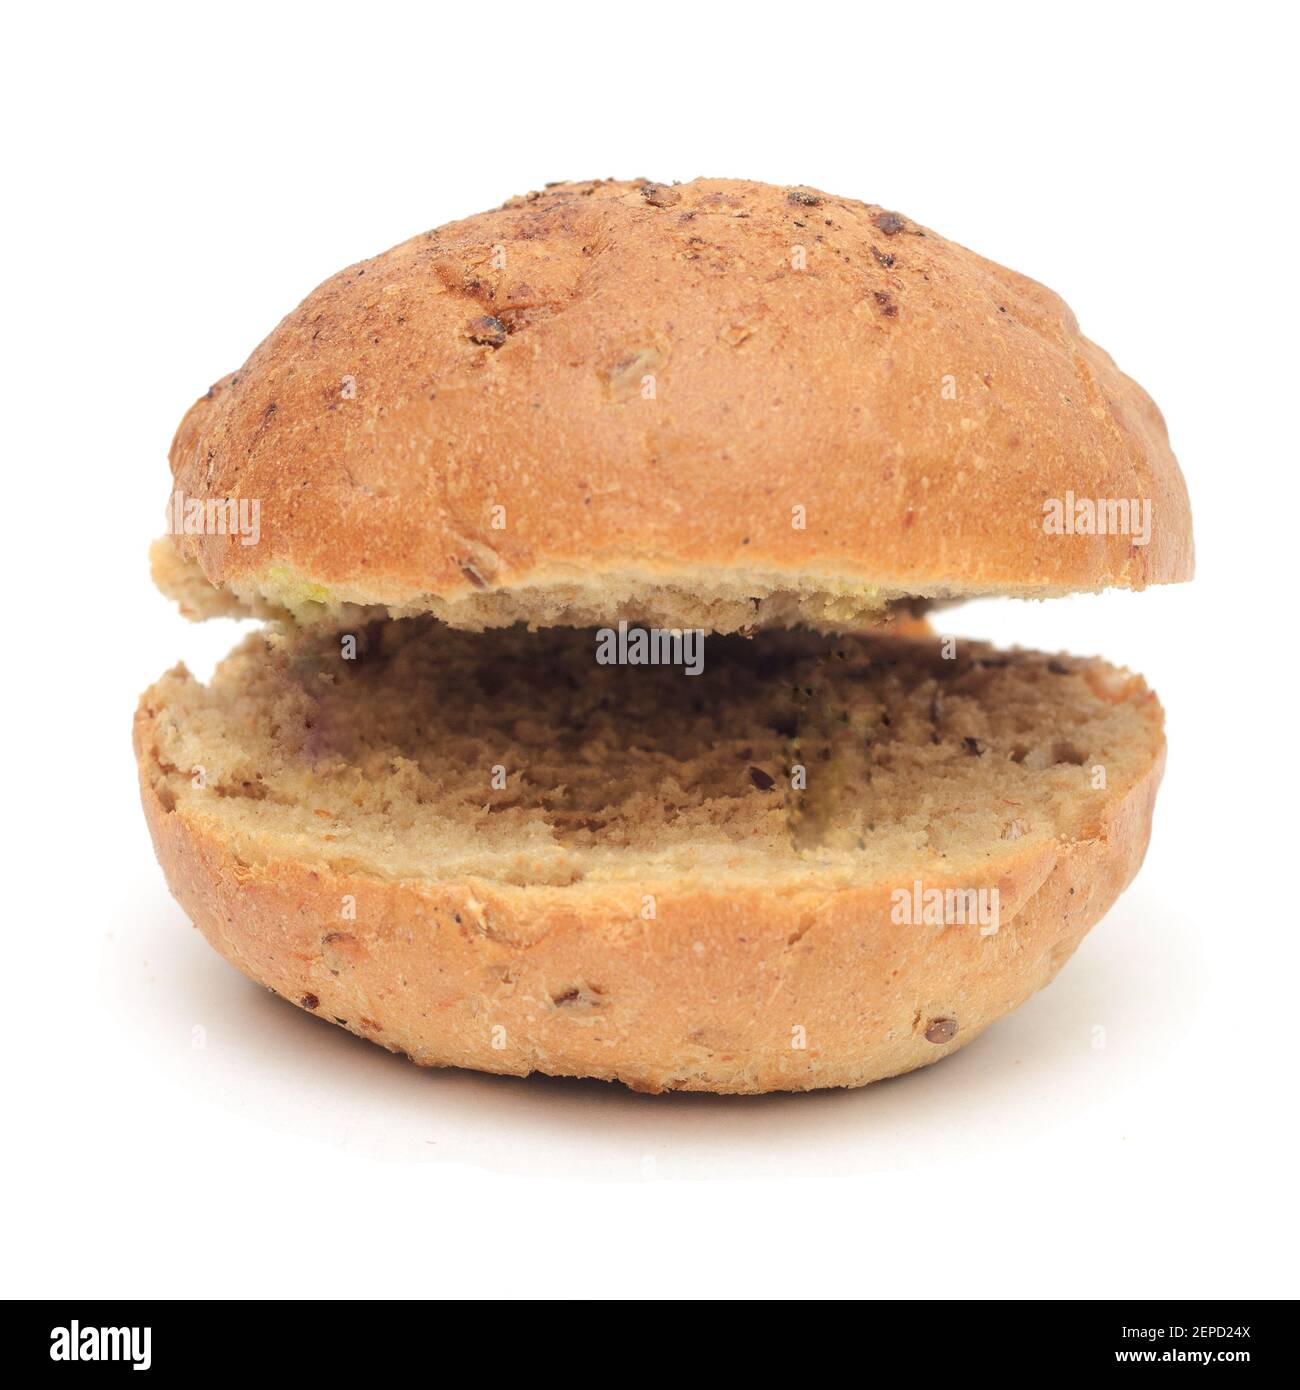 Burger-Brötchen mit Flachs in zwei Hälften auf einer Seite isoliert auf weißem Hintergrund geschnitten.Lustige Burger-Brötchen. Stockfoto